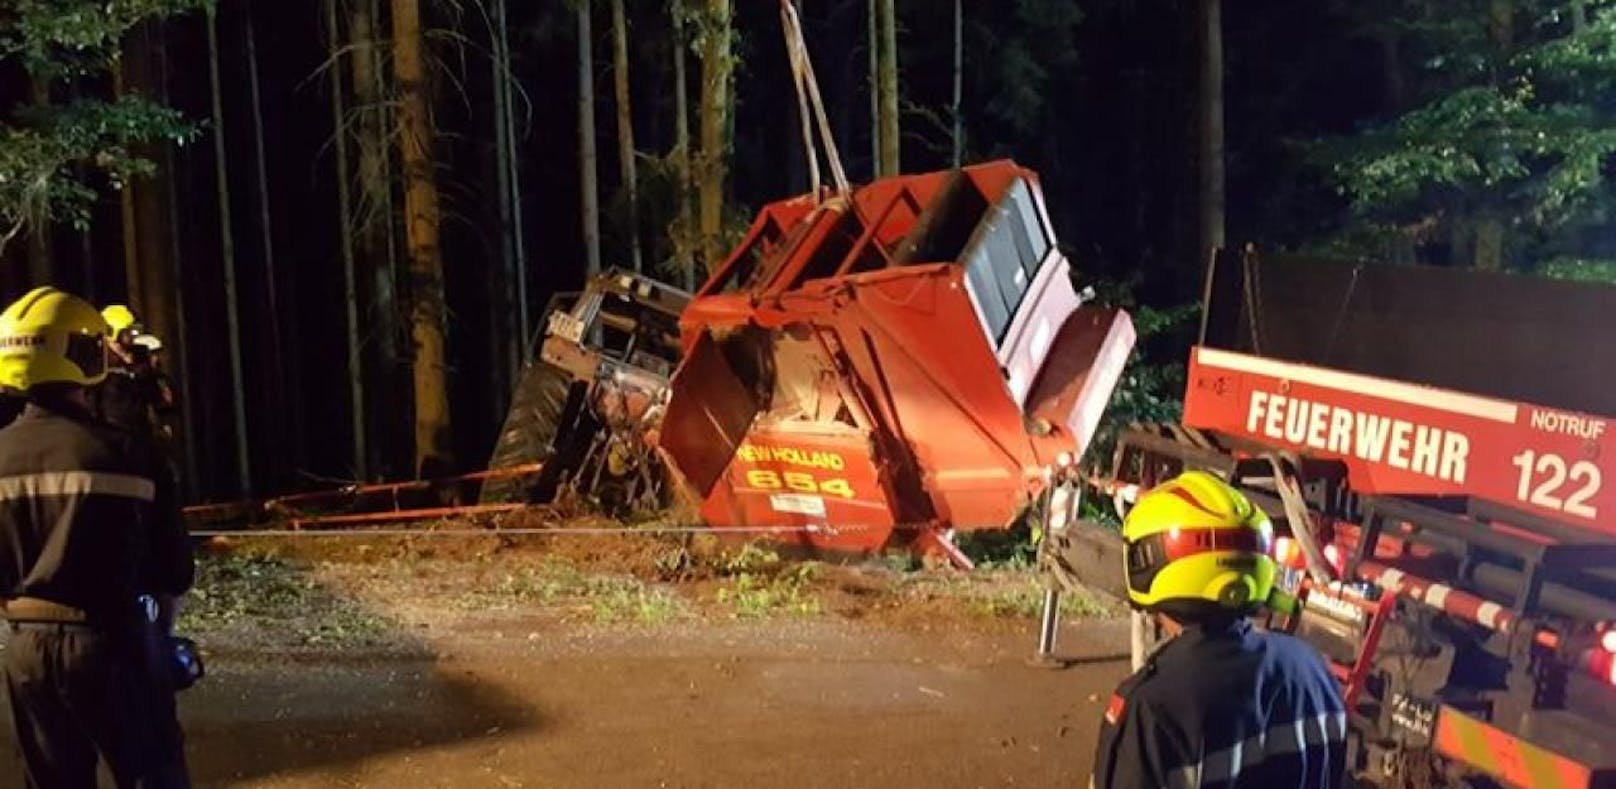 Traktor stürzte mit Presse in Wald - Lenker verletzt